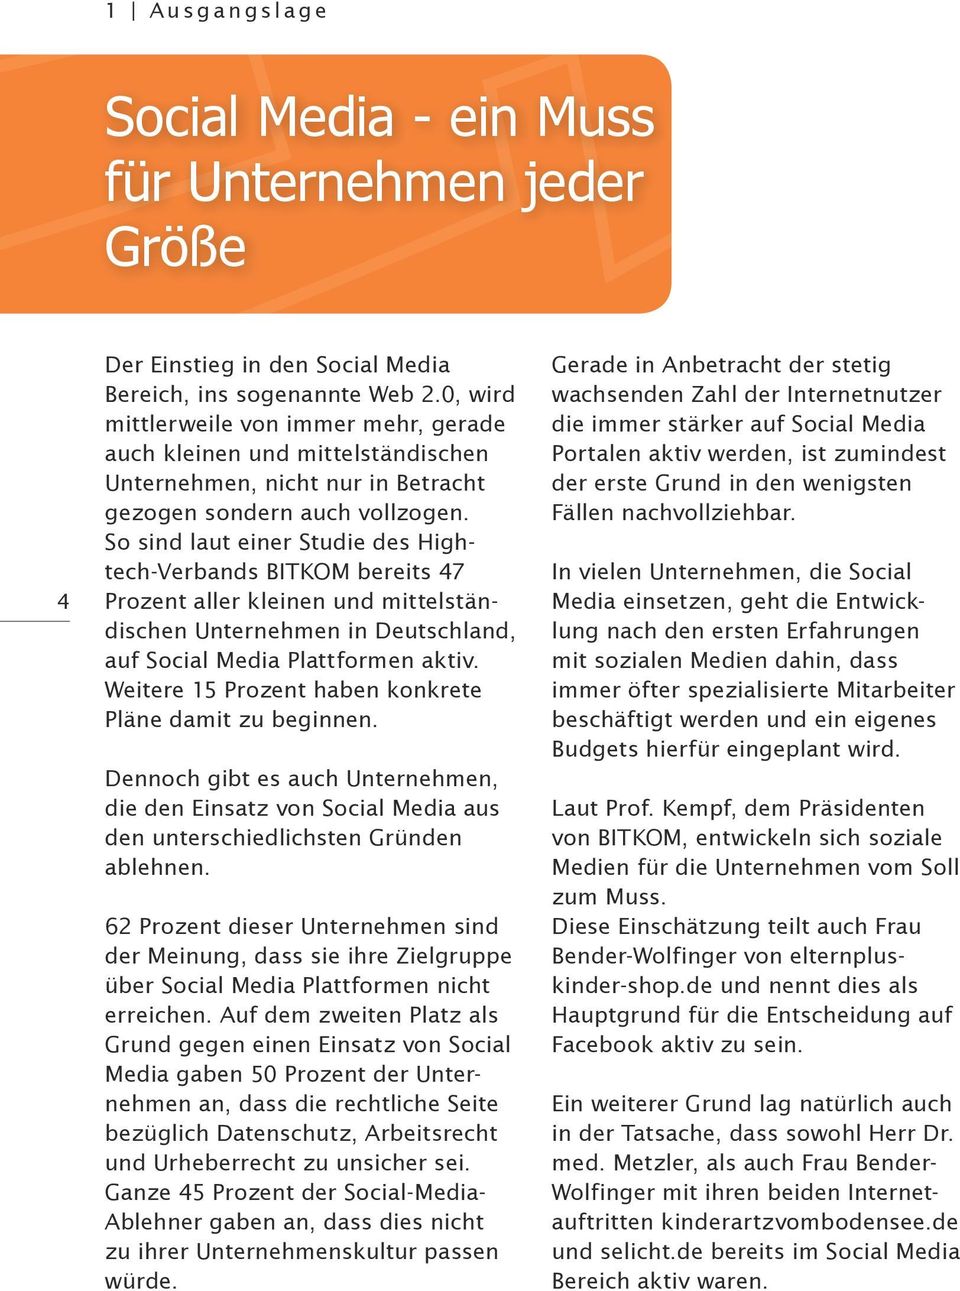 So sind laut einer Studie des Hightech-Verbands BITKOM bereits 47 Prozent aller kleinen und mittelständischen Unternehmen in Deutschland, auf Social Media Plattformen aktiv.